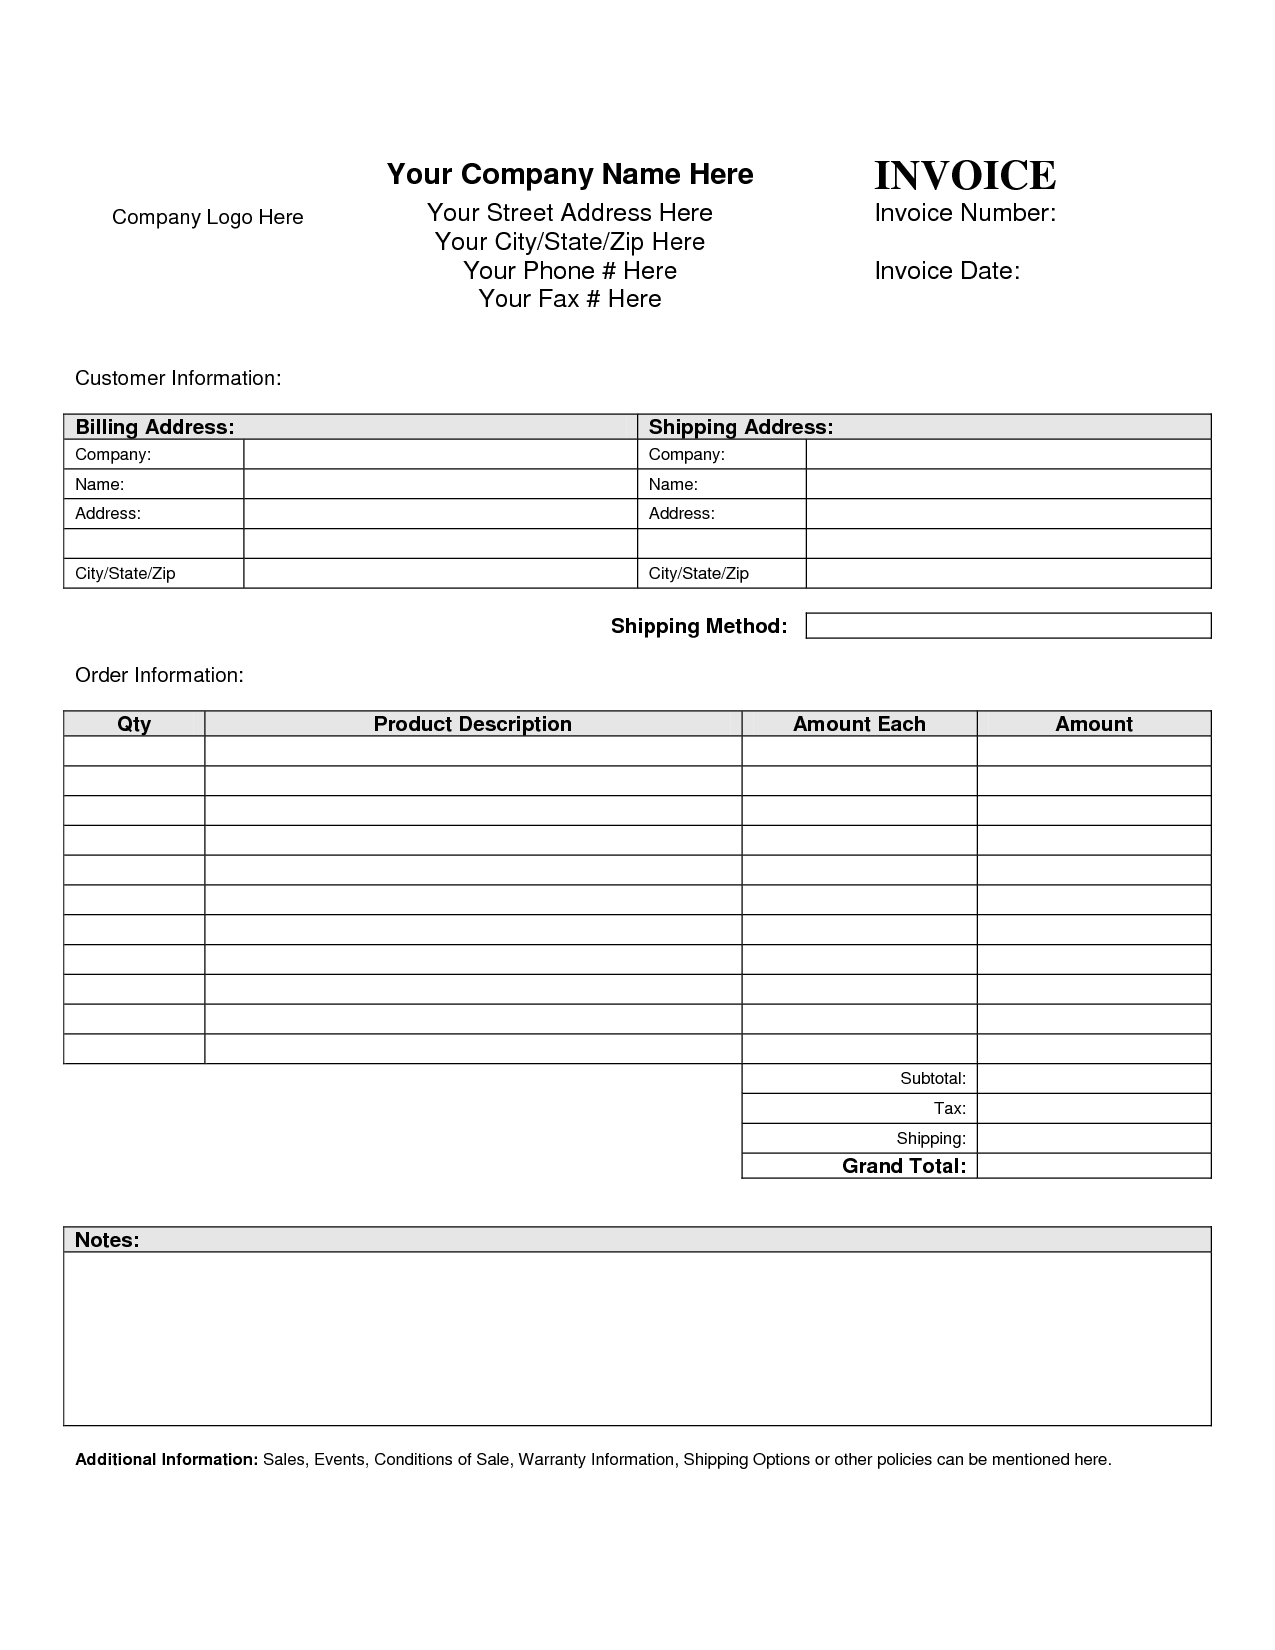 an invoice template blank invoice template blank invoice 1275 X 1650